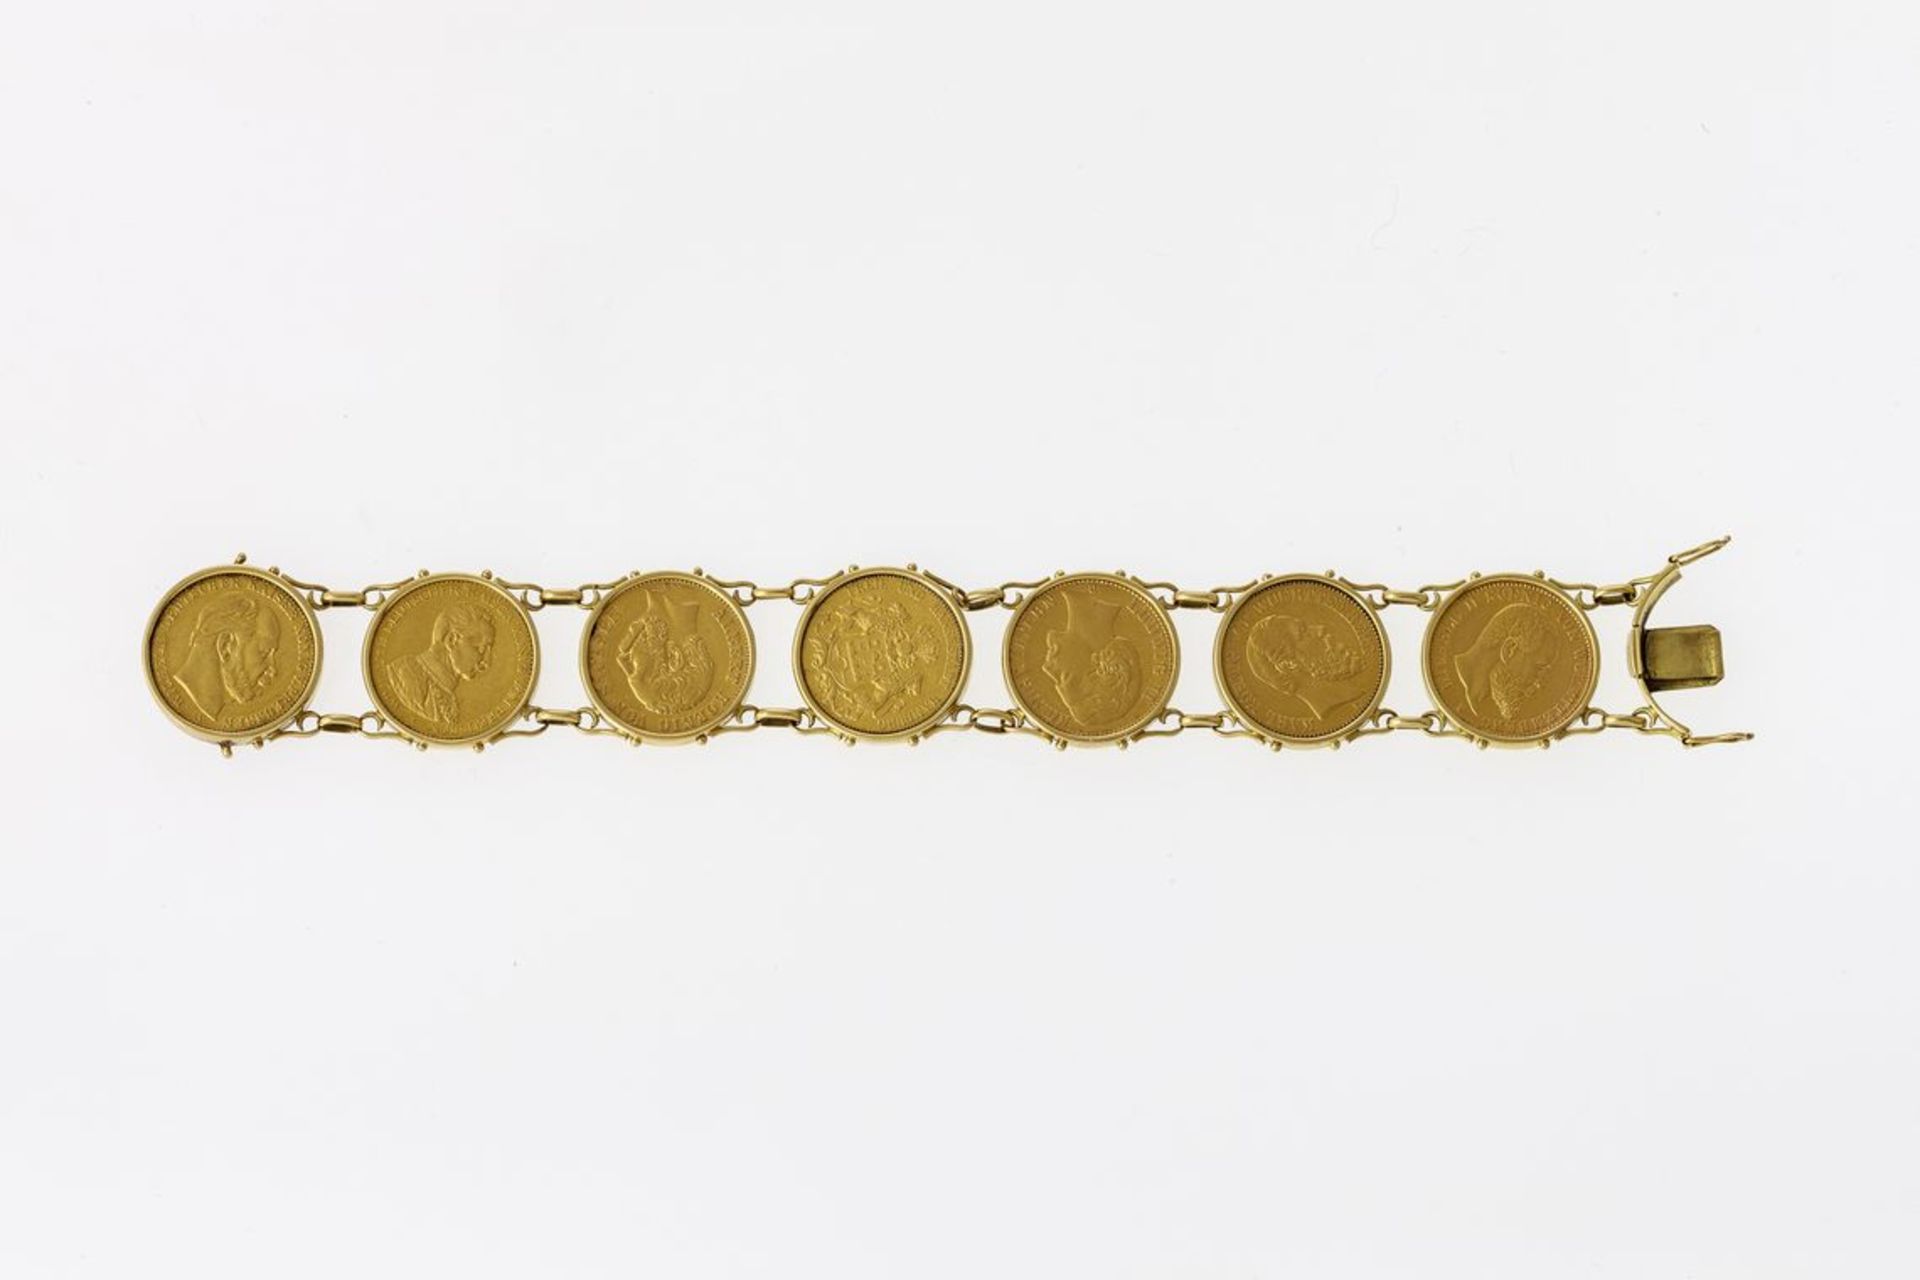 MünzarmbandSieben 20-Mark-Goldmünzen (GG, 900) in glatten Fassungen (GG, 750). Dt. Reich, 1876-1914,